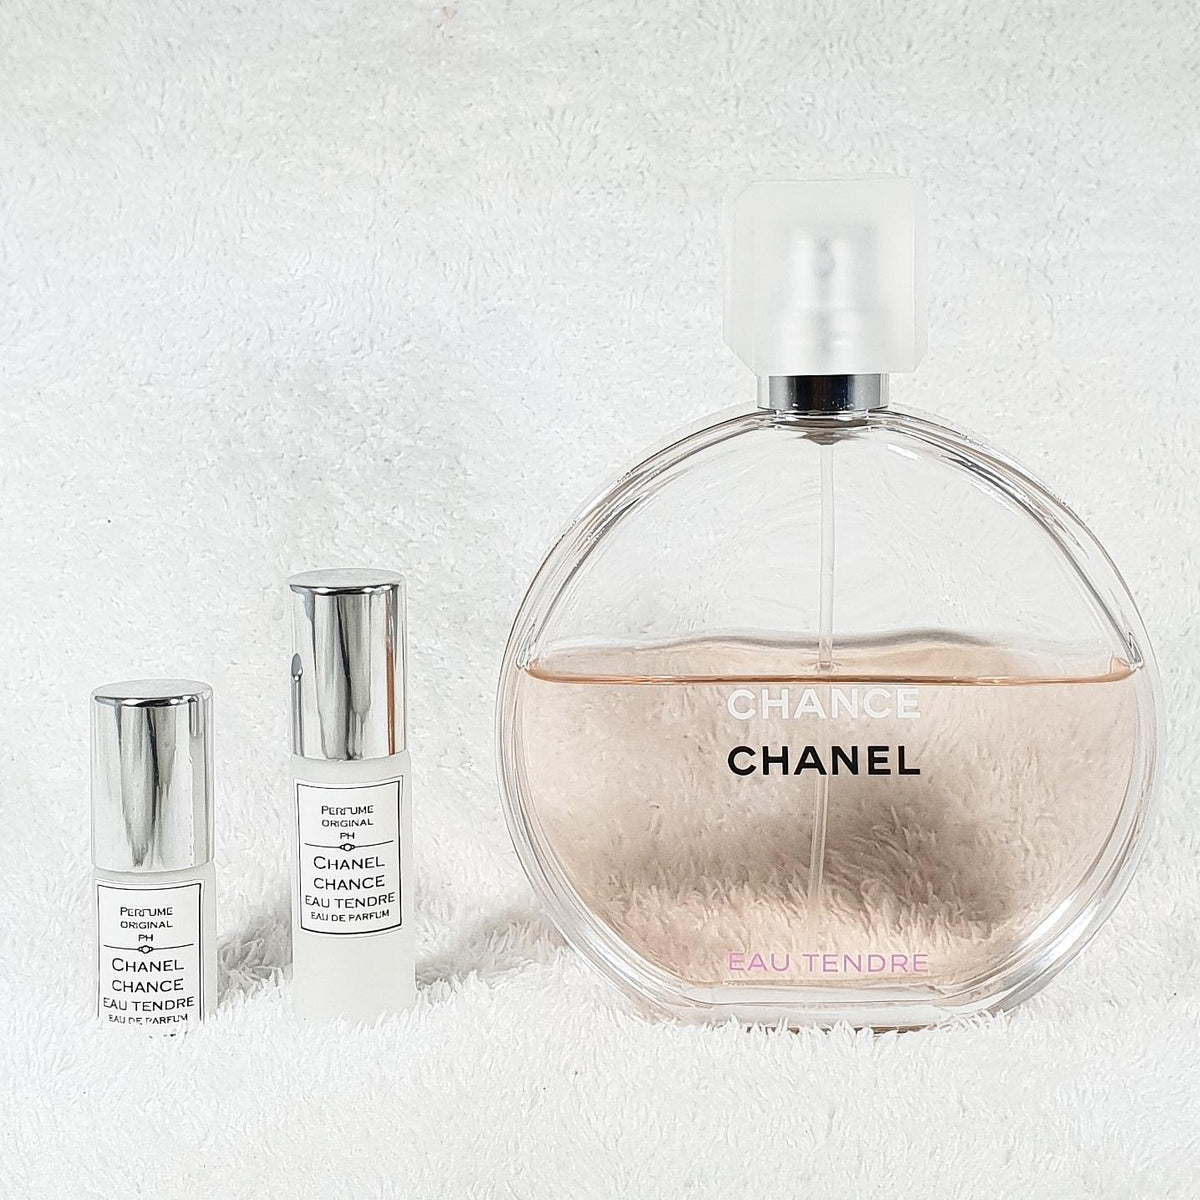 Chance Eau Tendre (Eau de Parfum) Samples for women by Chanel